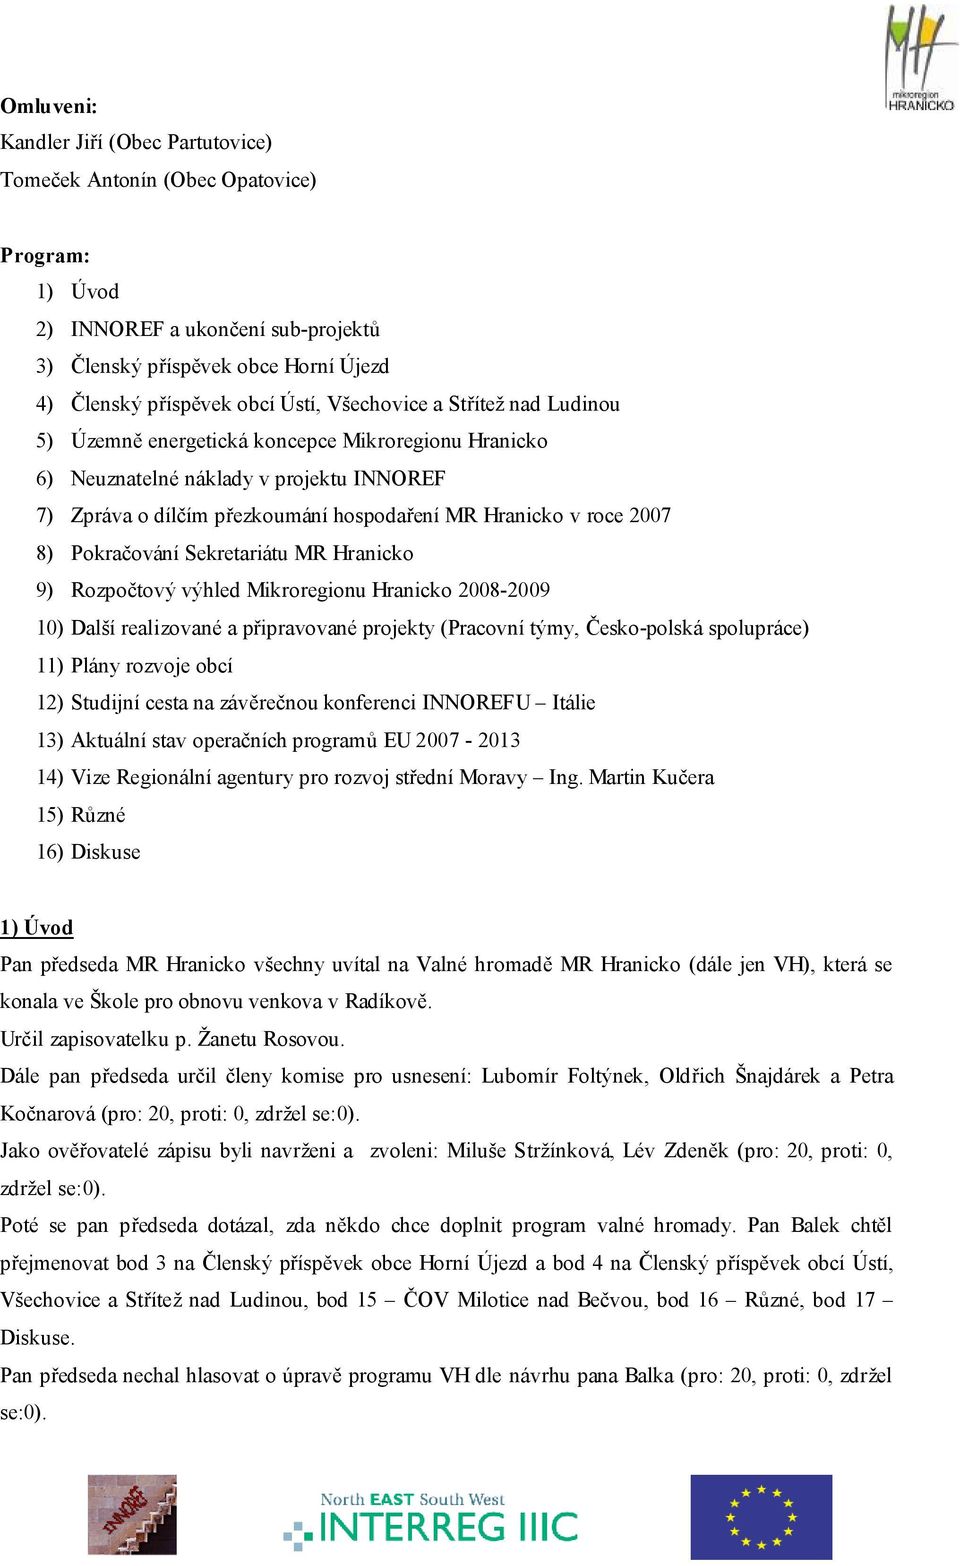 Pokračování Sekretariátu MR Hranicko 9) Rozpočtový výhled Mikroregionu Hranicko 2008-2009 10) Další realizované a připravované projekty (Pracovní týmy, Česko-polská spolupráce) 11) Plány rozvoje obcí